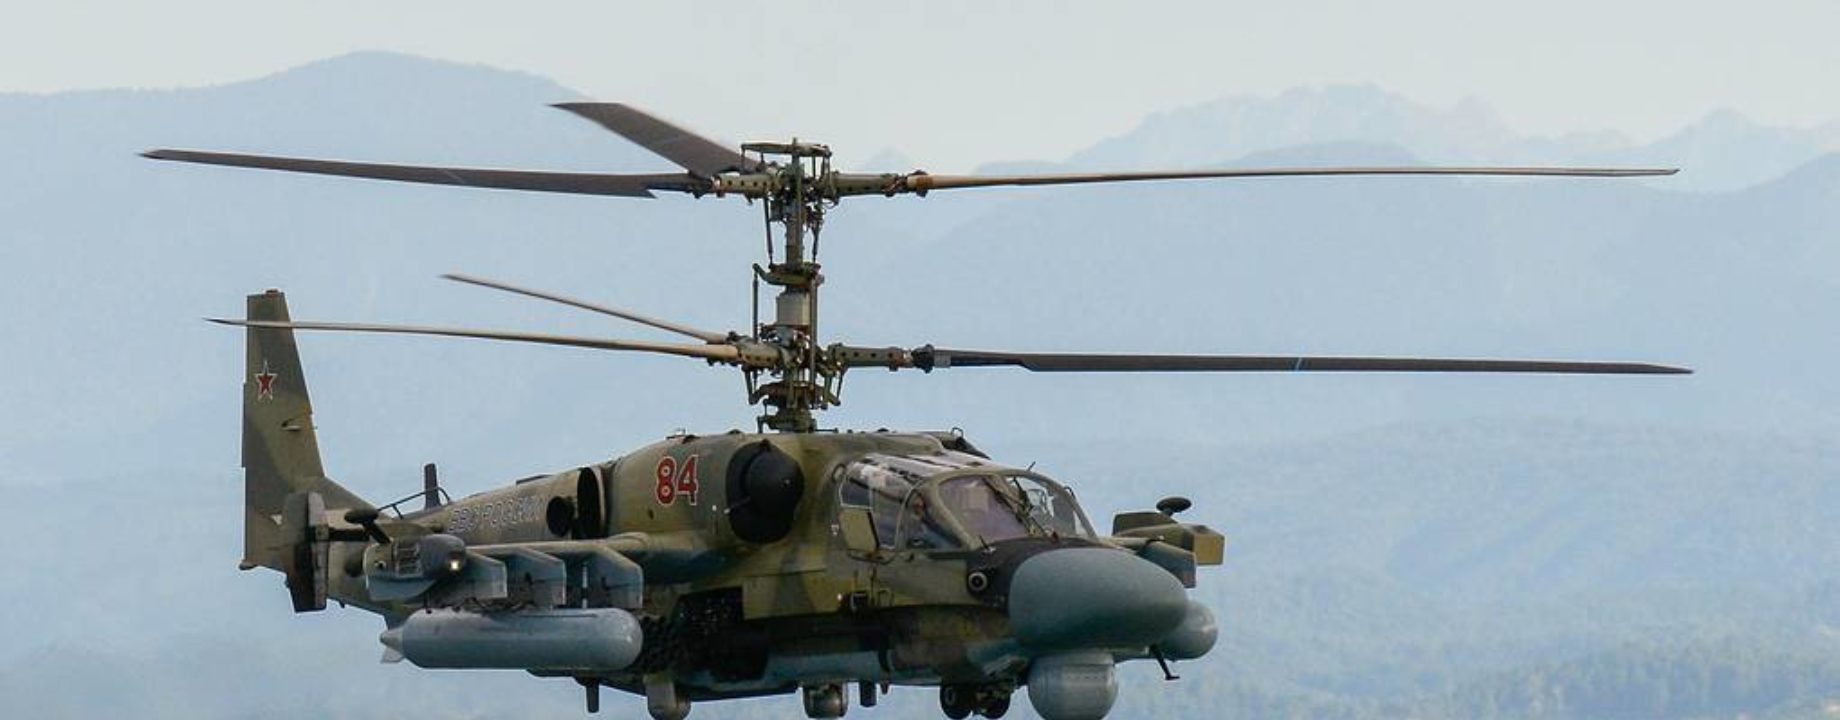 Orosz ka52 helikopter